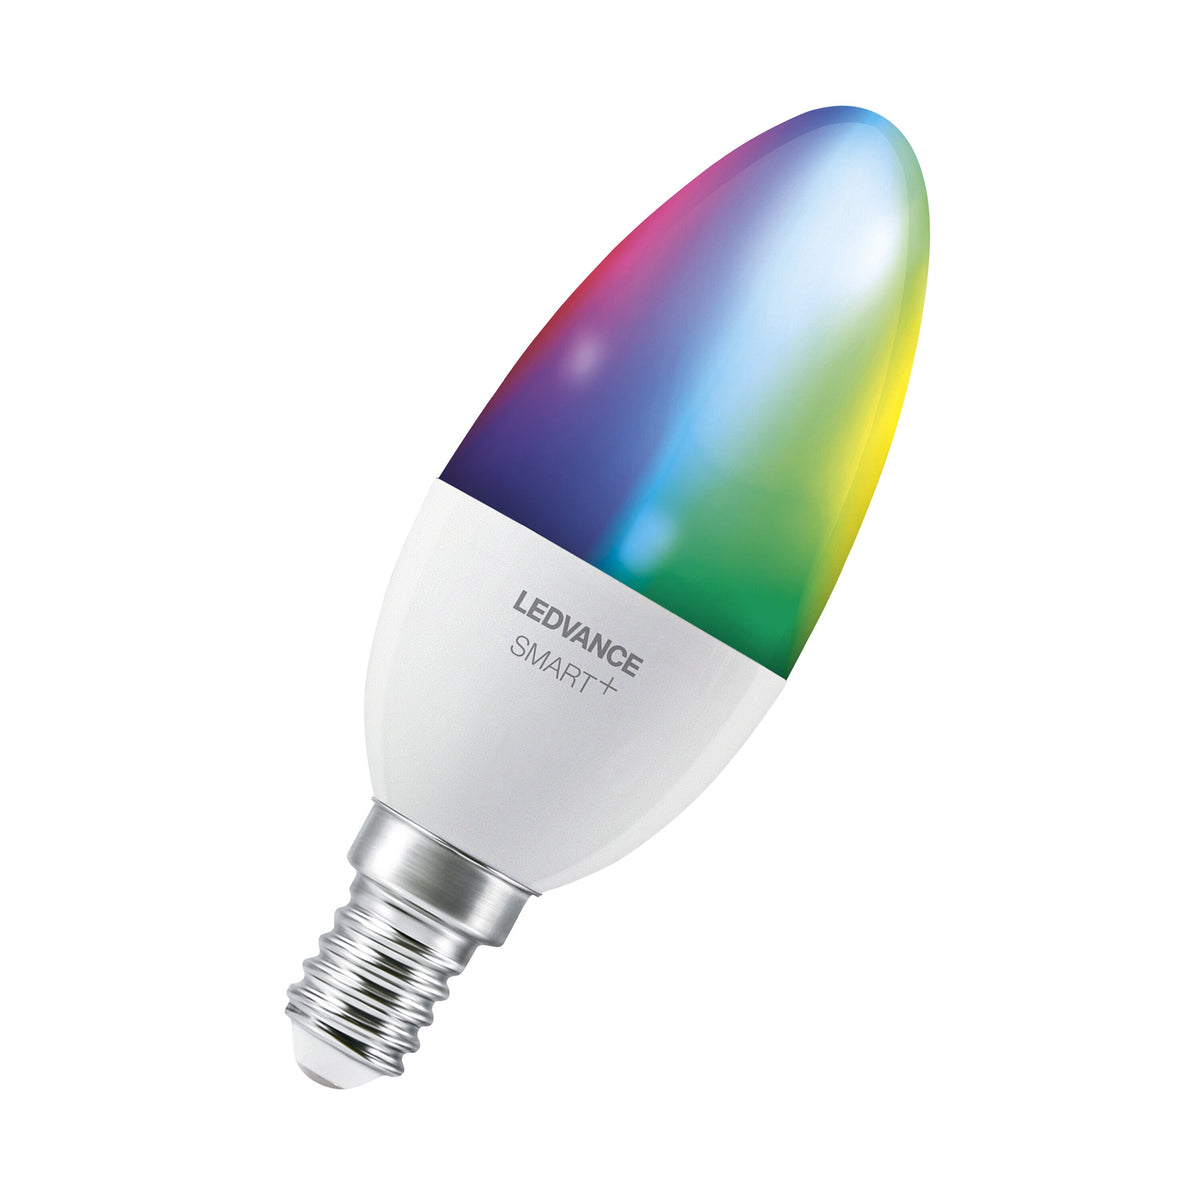 Lampada LED LEDVANCE SMART+ WIFI, aspetto gelido, 4,9 W, 470 lm